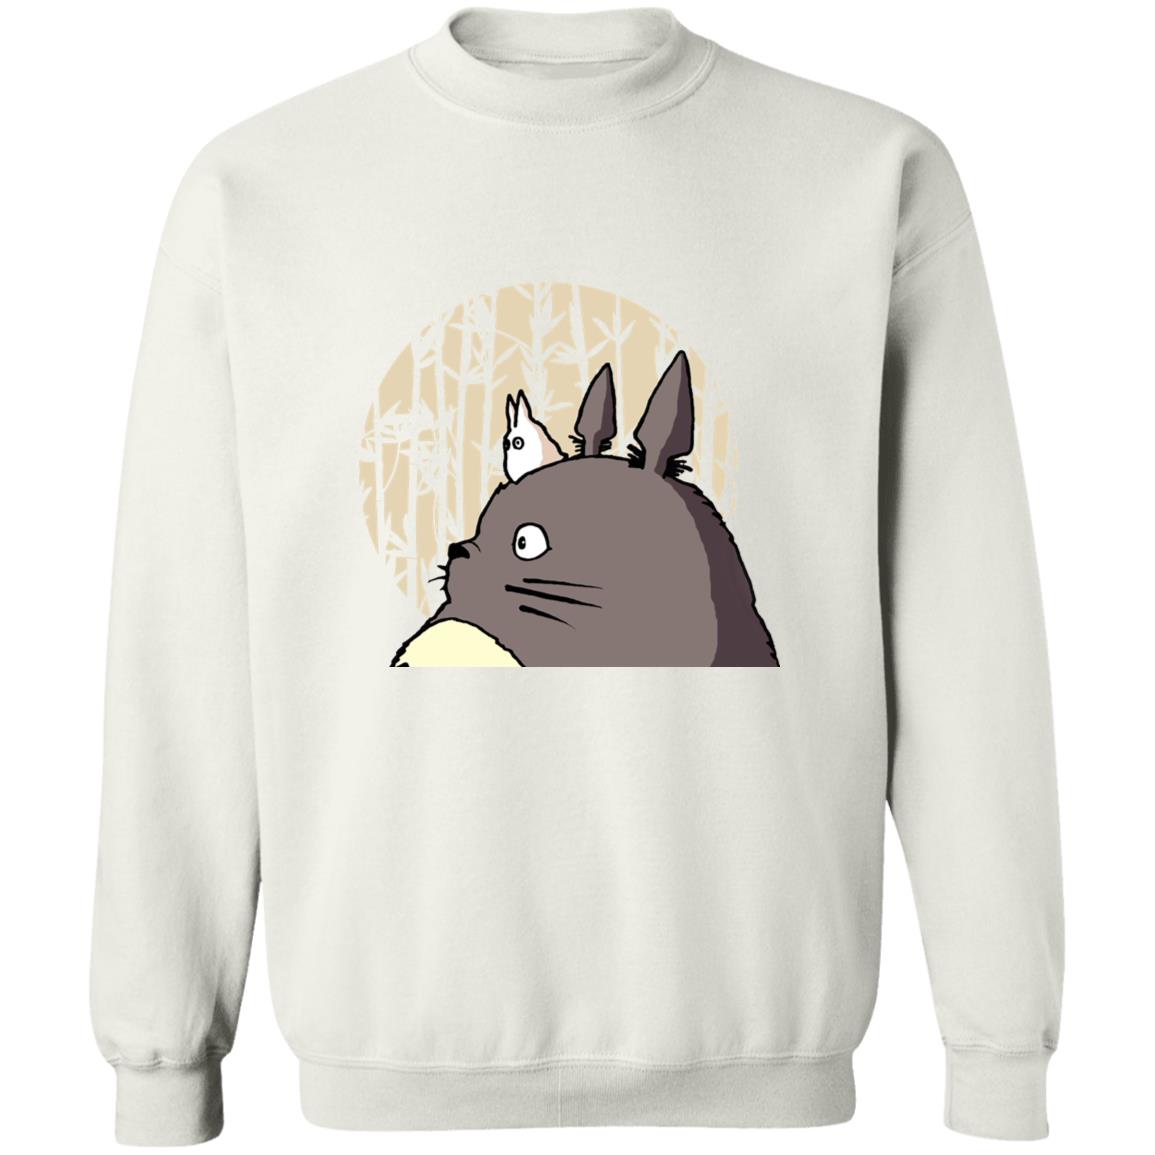 Oh-Totoro and Chibi-Totoro Sweatshirt Ghibli